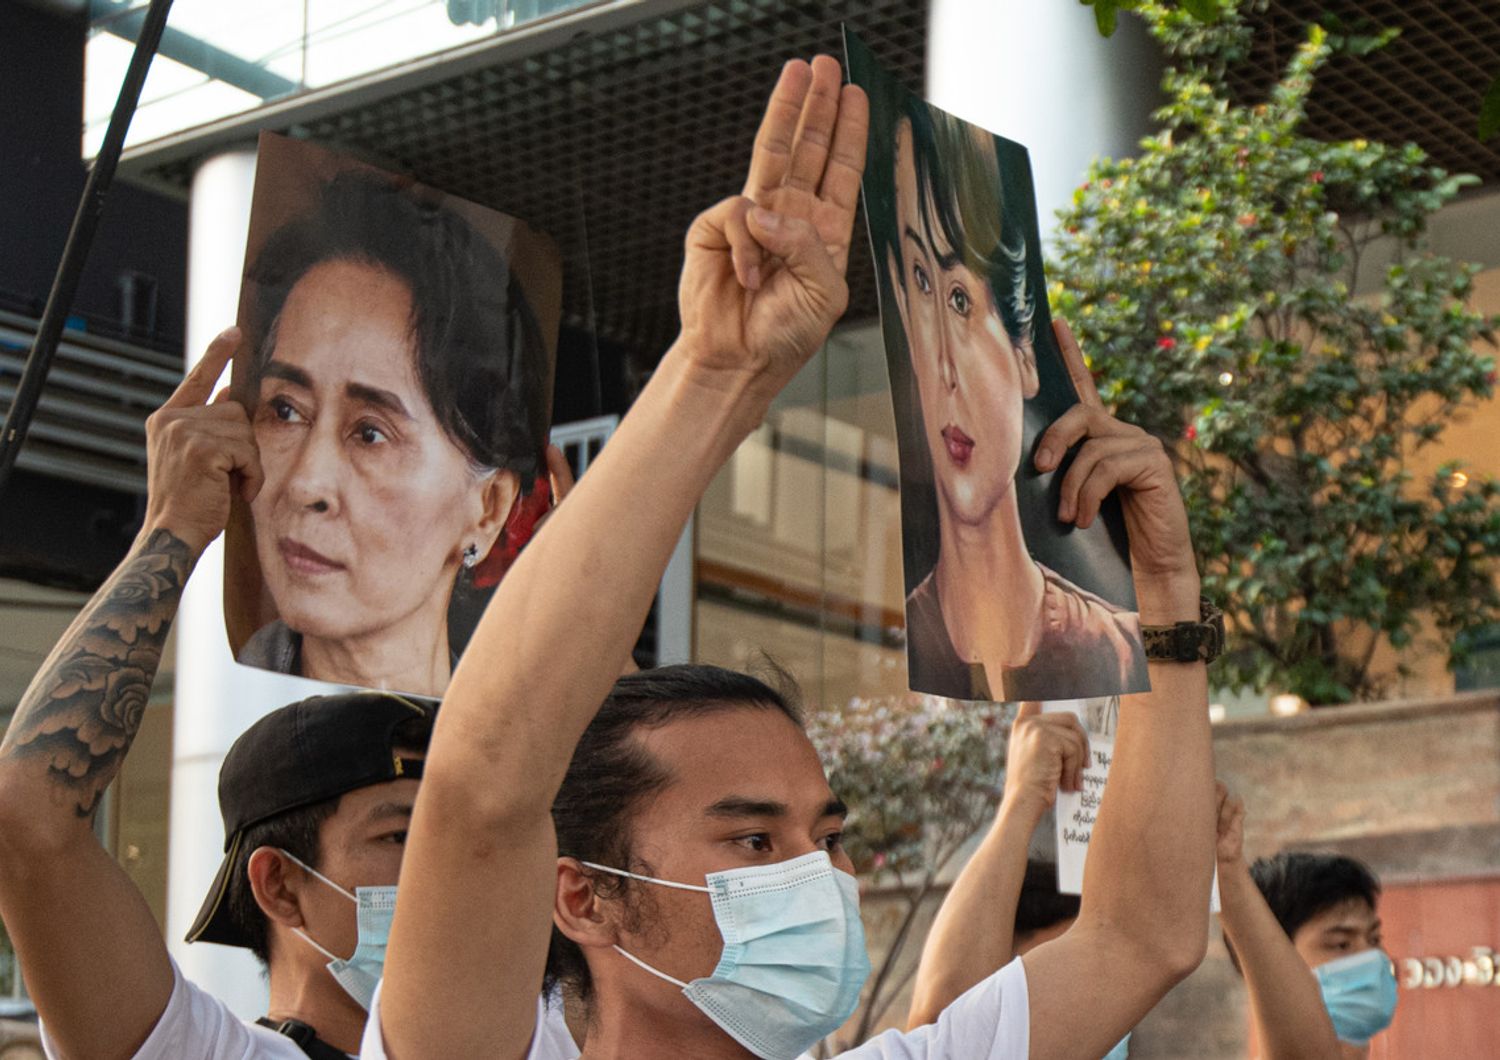 Proteste in Myanmar dopo golpe militare